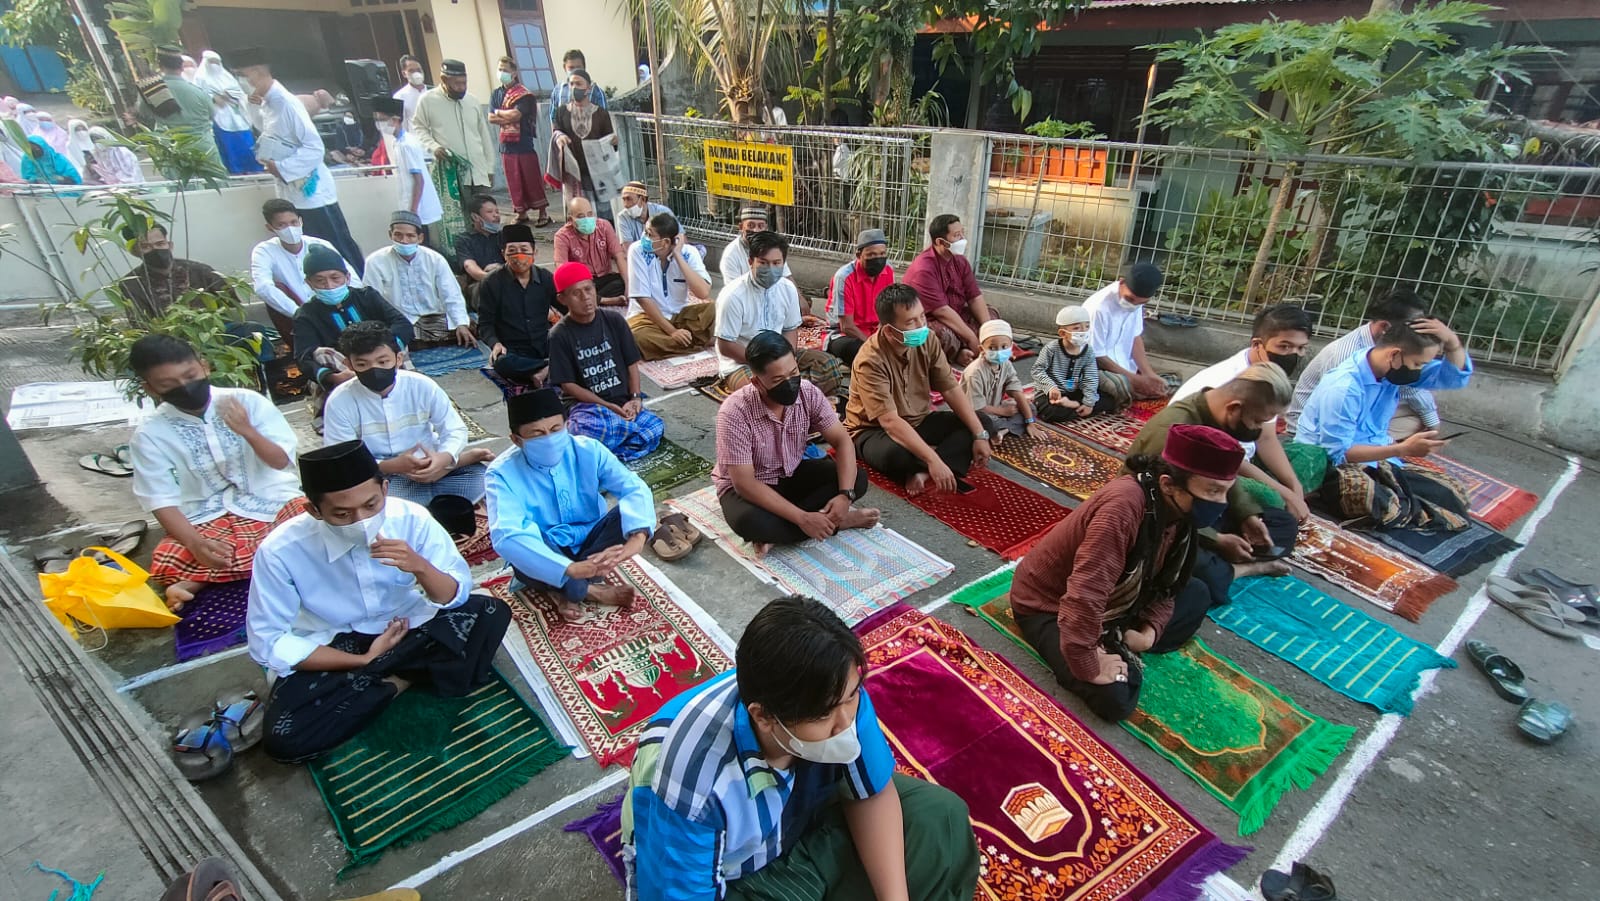 Suasana Salat Idul Fitri 1443 H di Masjid Baiturachim Patangpuluhan Jogja